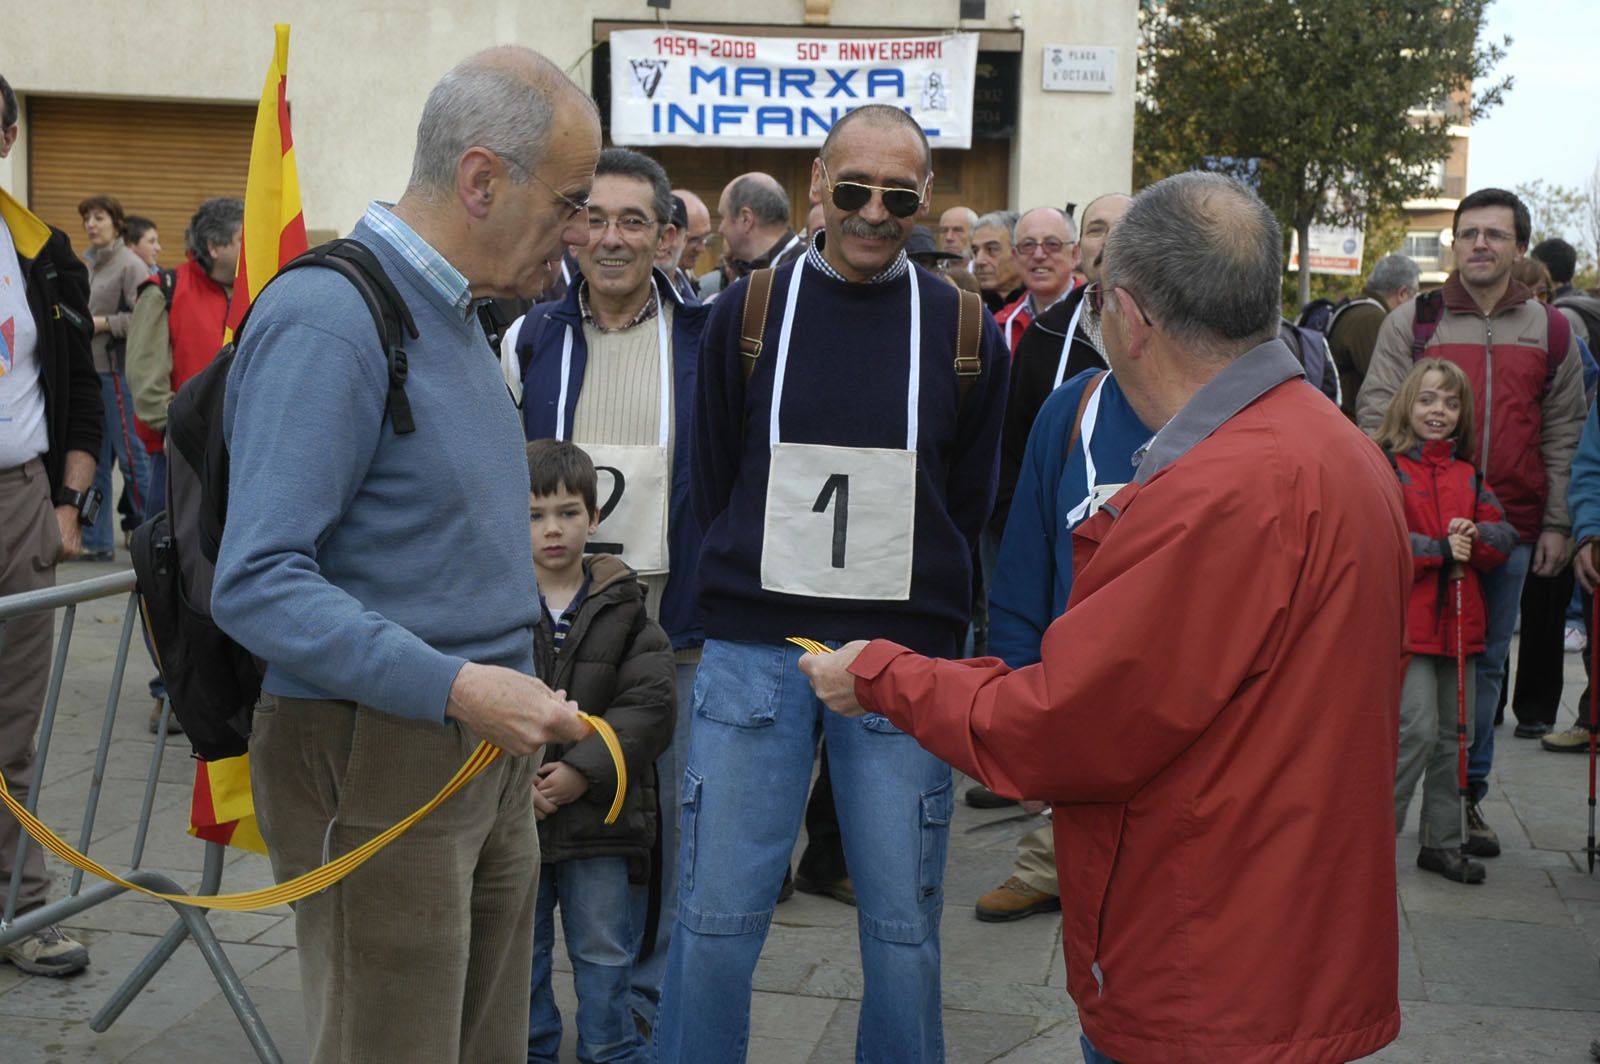 50é aniversari de la Marxa en l'edició de 2008 FOTO: Lluís Llebot